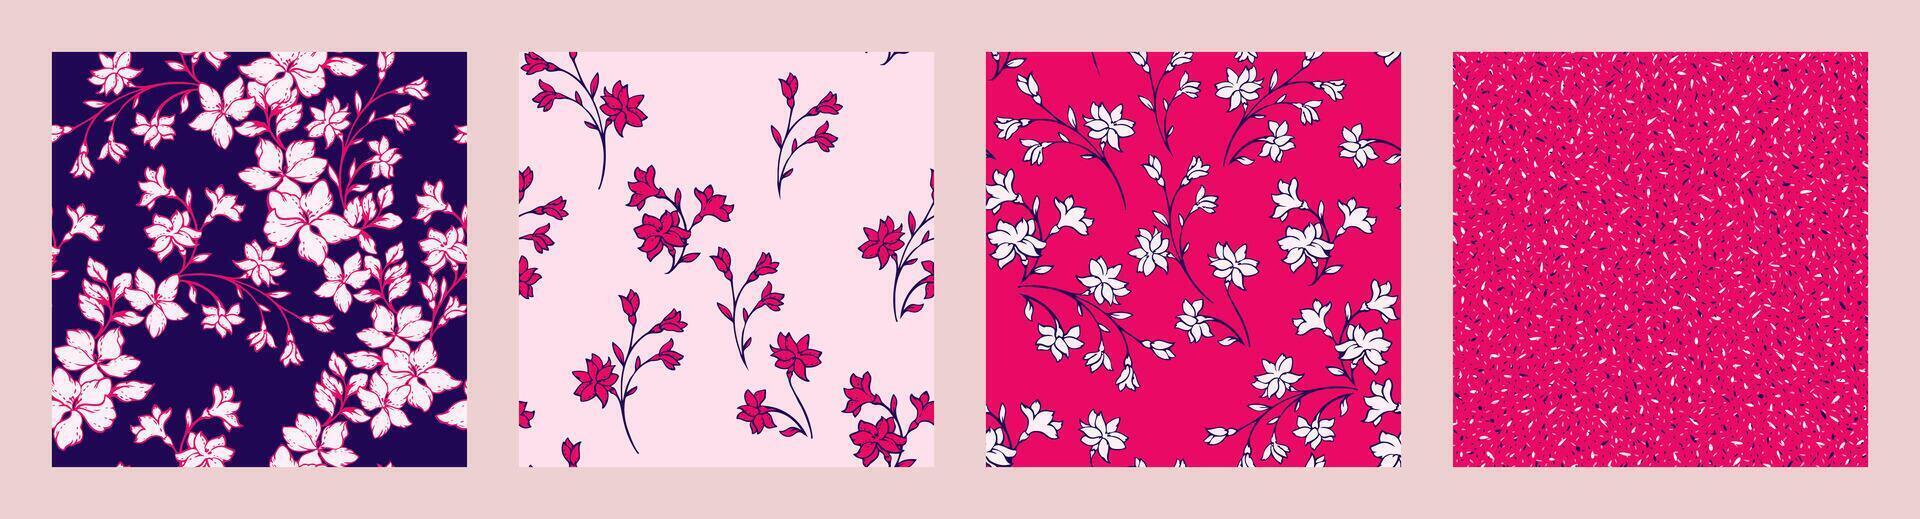 helder collage van reeks naadloos patronen met abstract gestileerde bloesems wild bloemen. vector hand- getrokken schetsen silhouetten voorzichtig bloemen stengels, vormen willekeurig vlekken, polka stippen. Sjablonen voor ontwerp